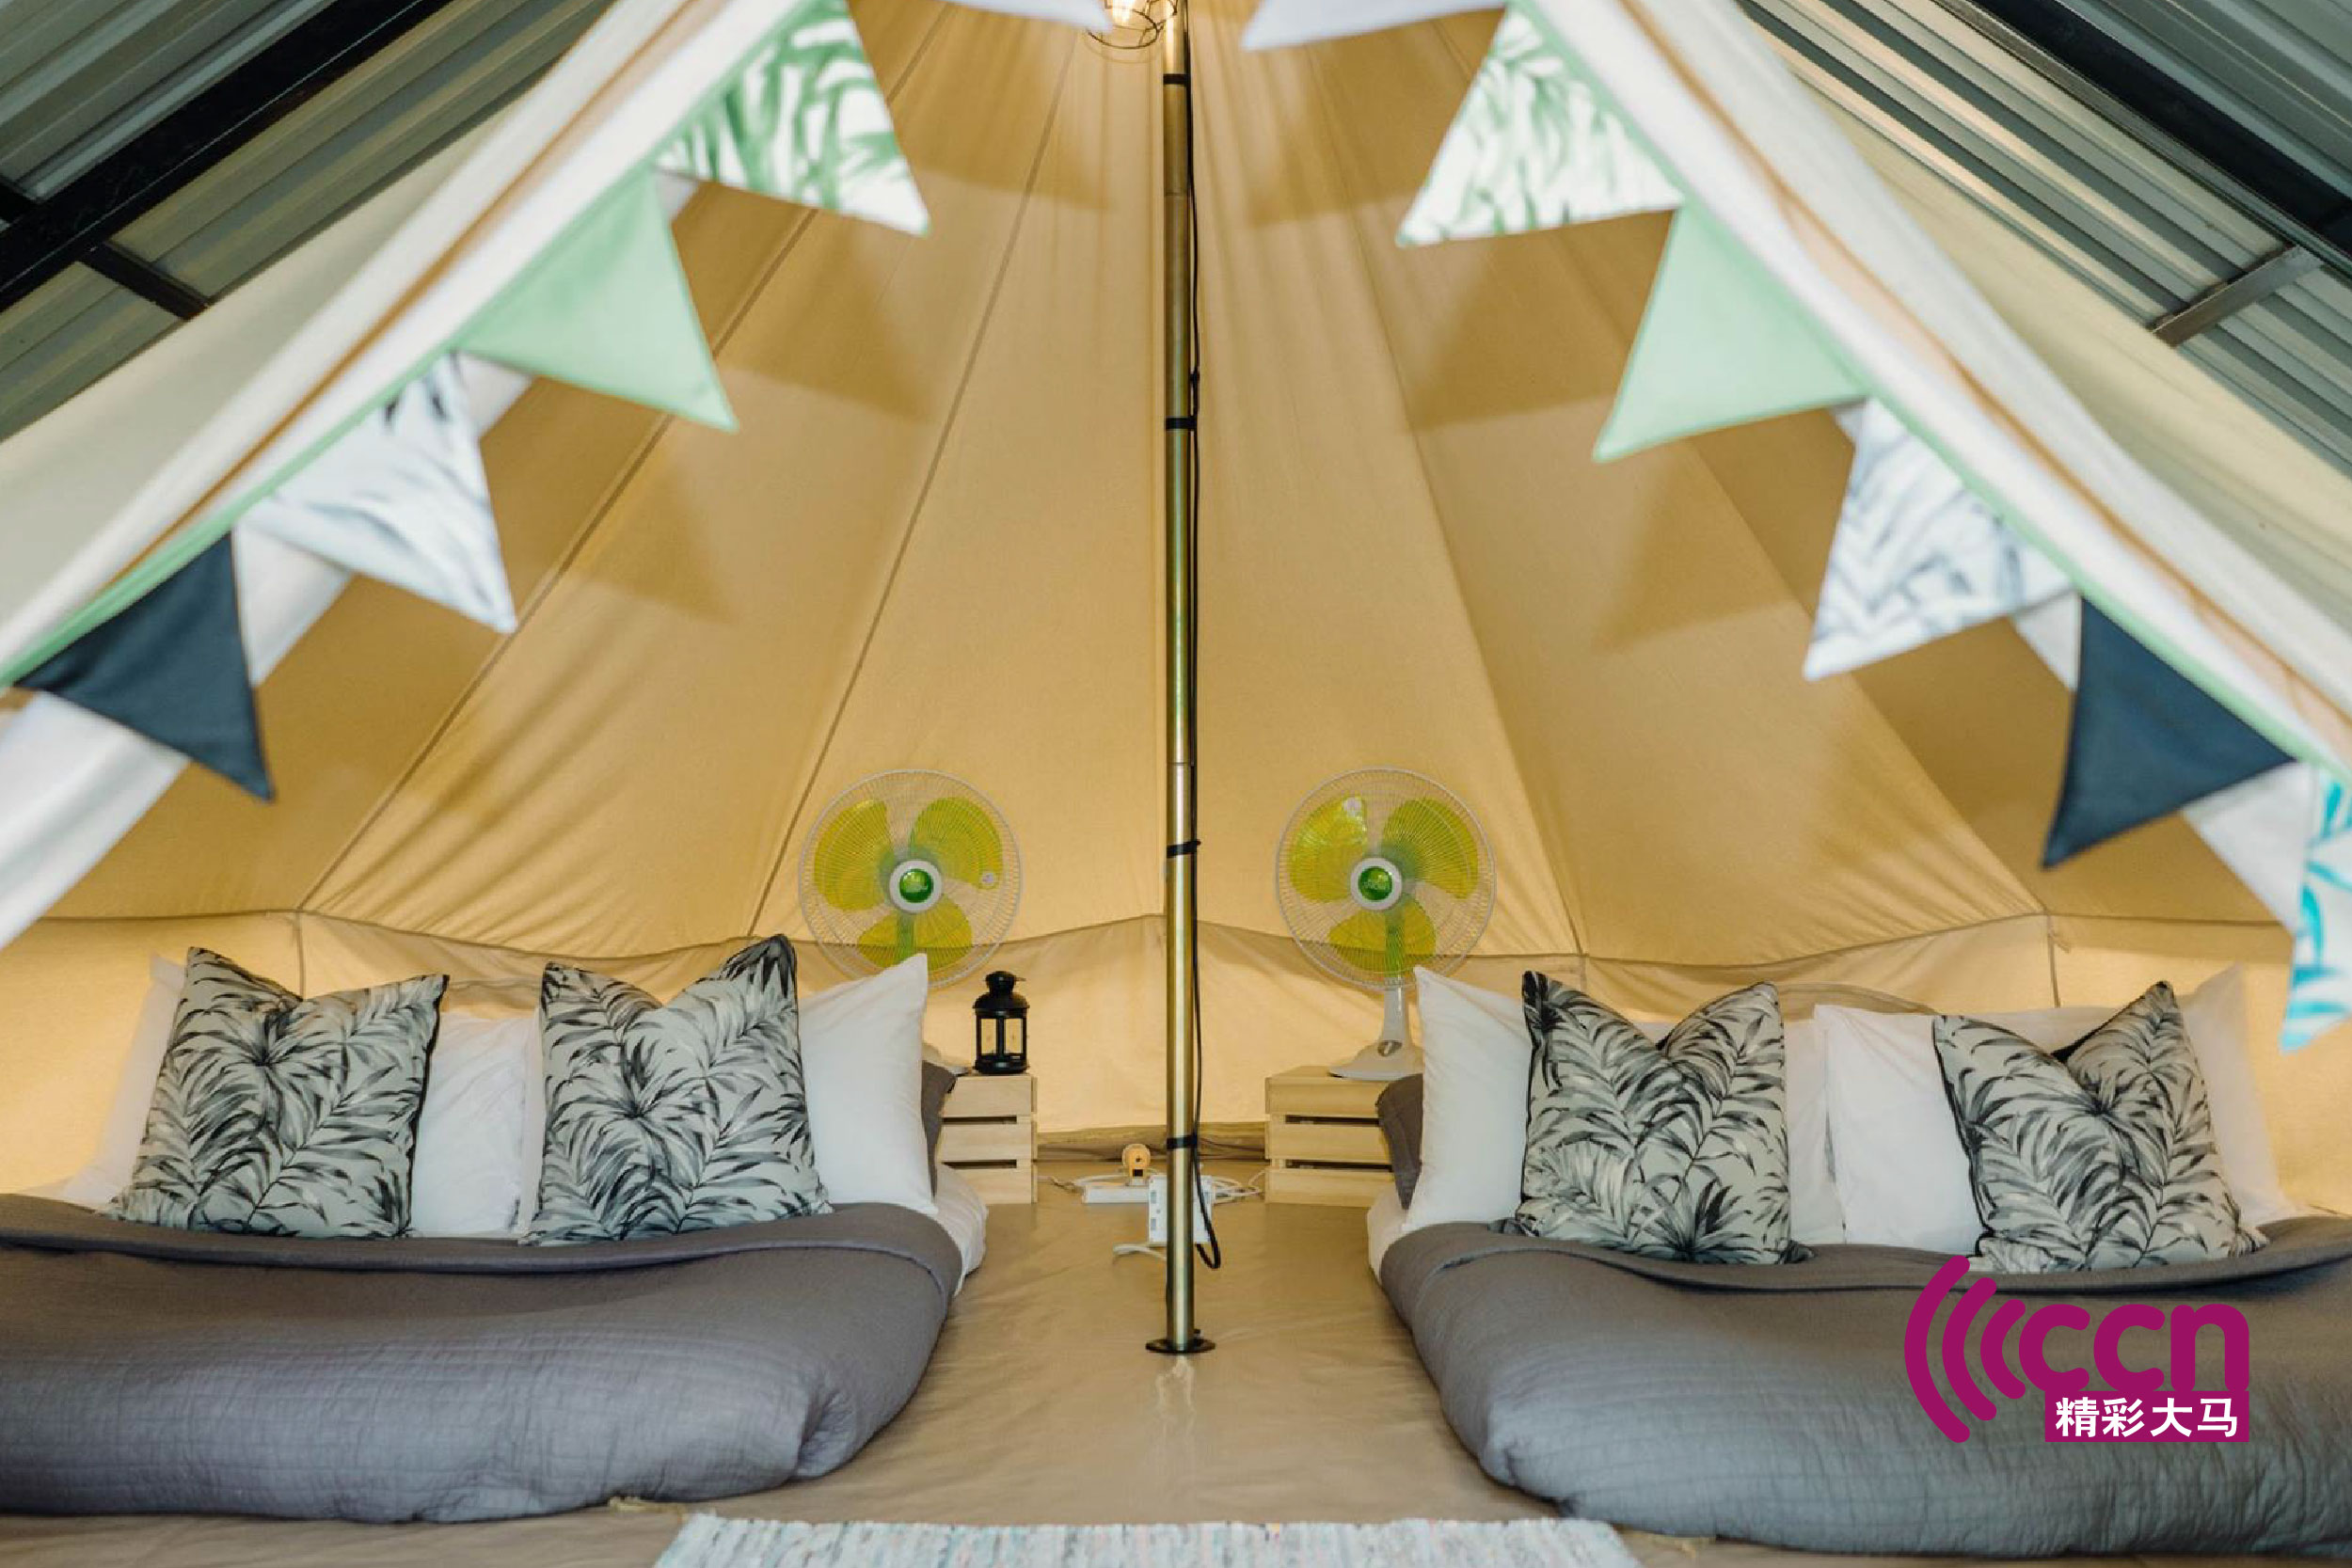 帐篷的内部有床枕头棉被风扇和空调，非常舒适呢。-摘自Dusun Bonda脸书-